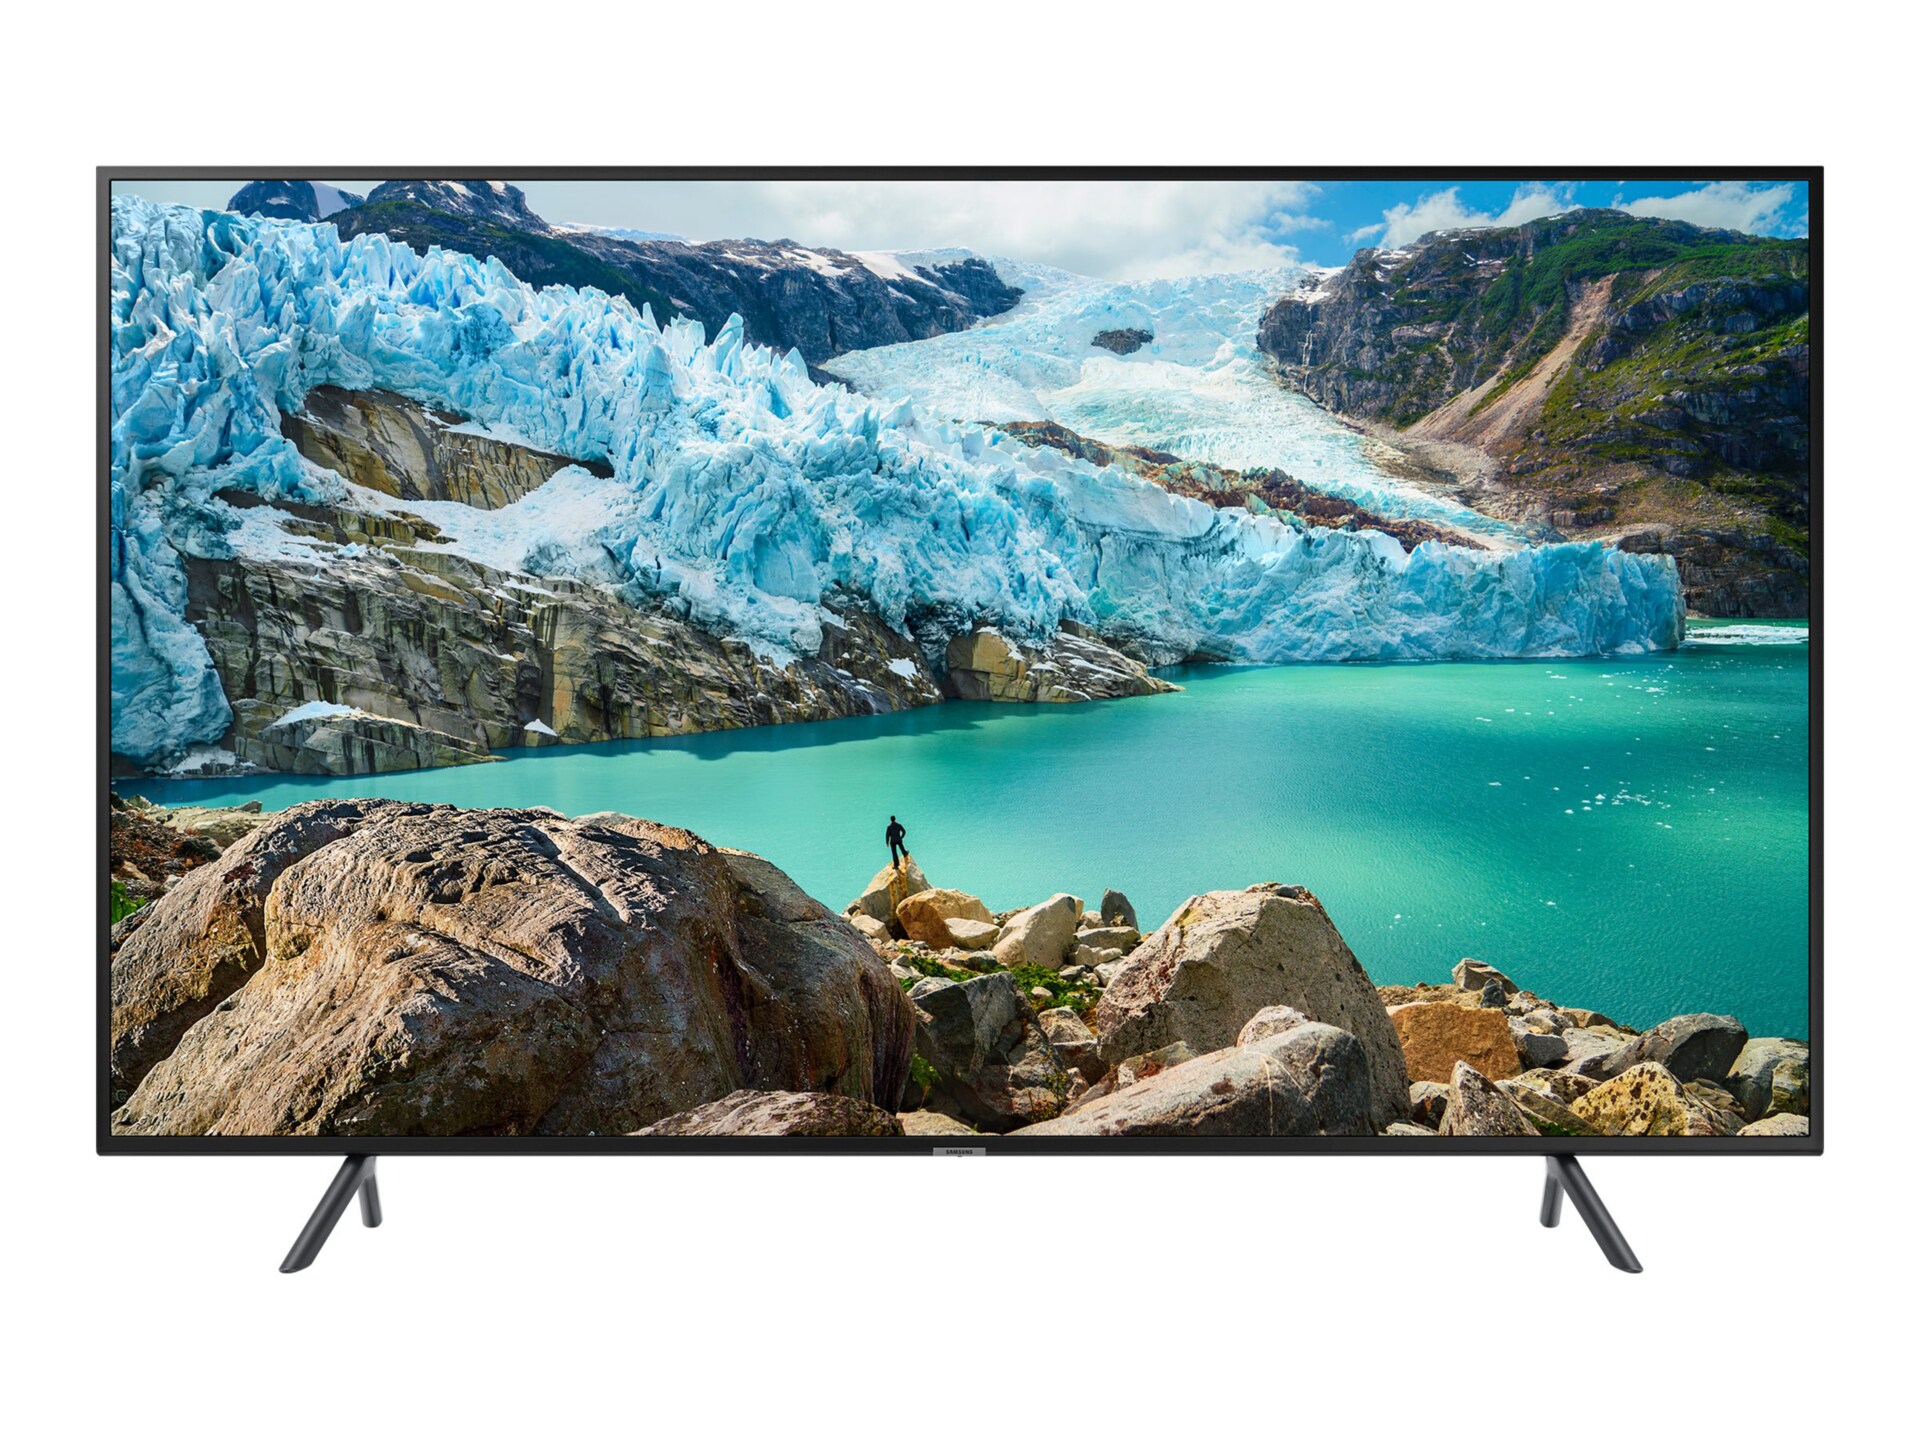 Samsung BER 49" LED TV - Full HD